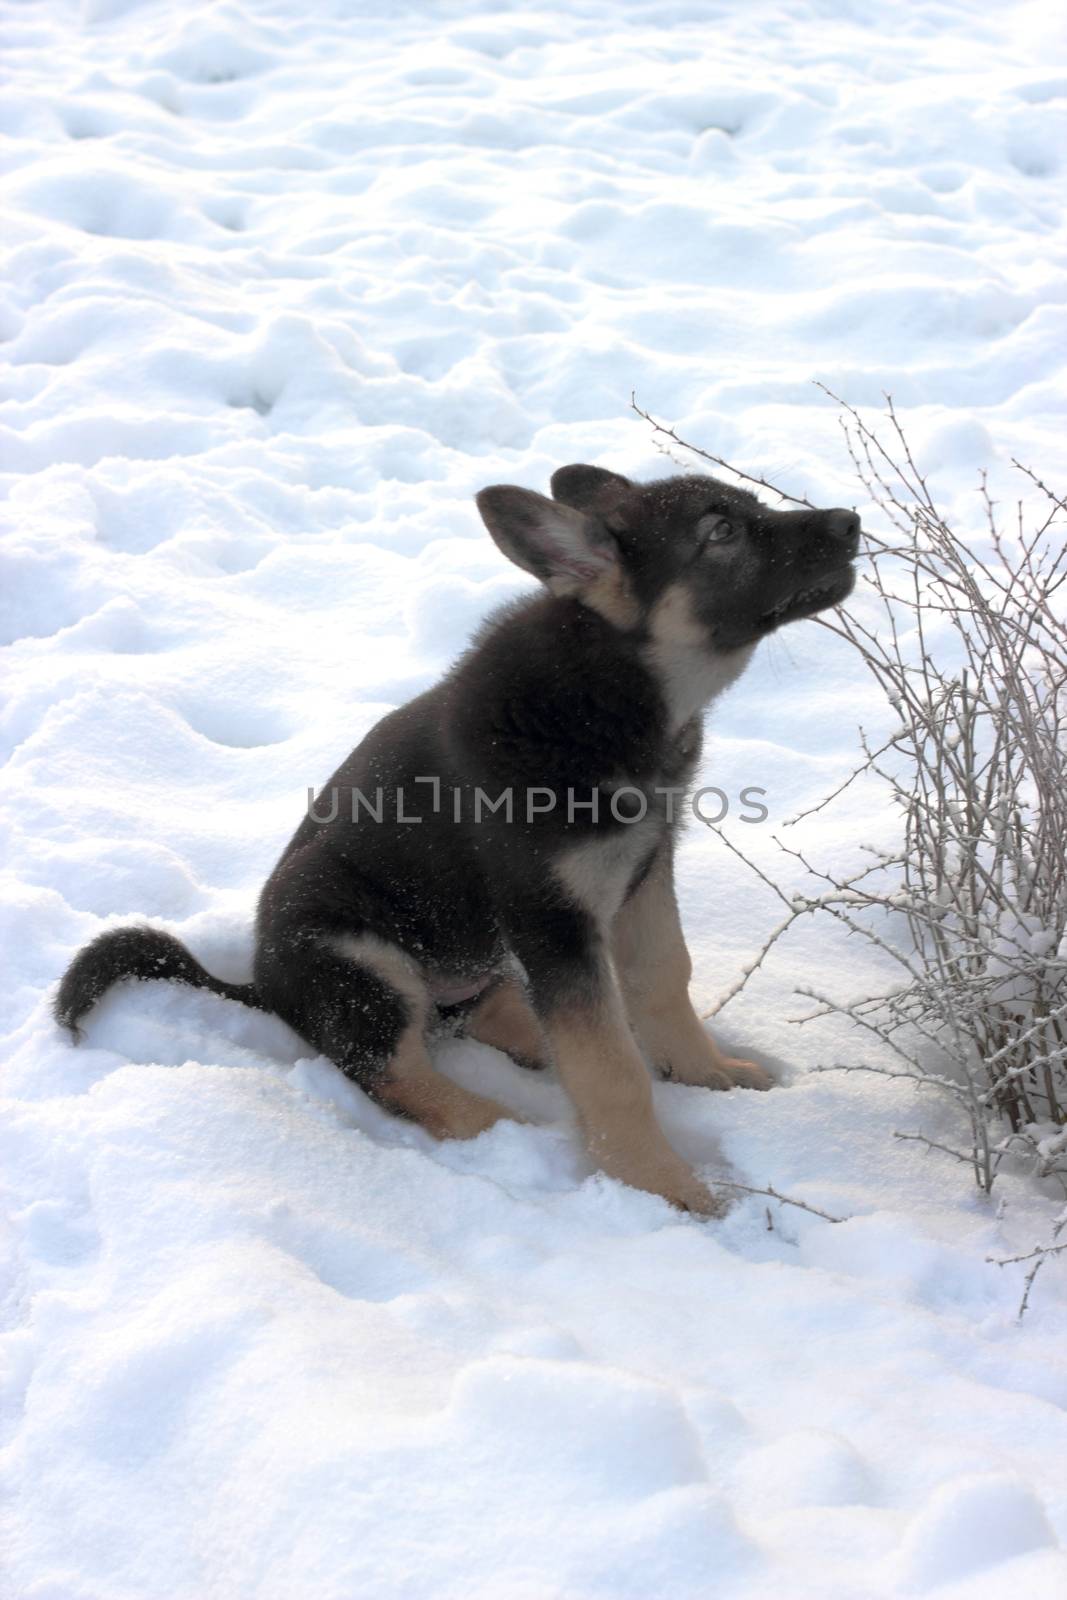 German shepherd puppy by Metanna